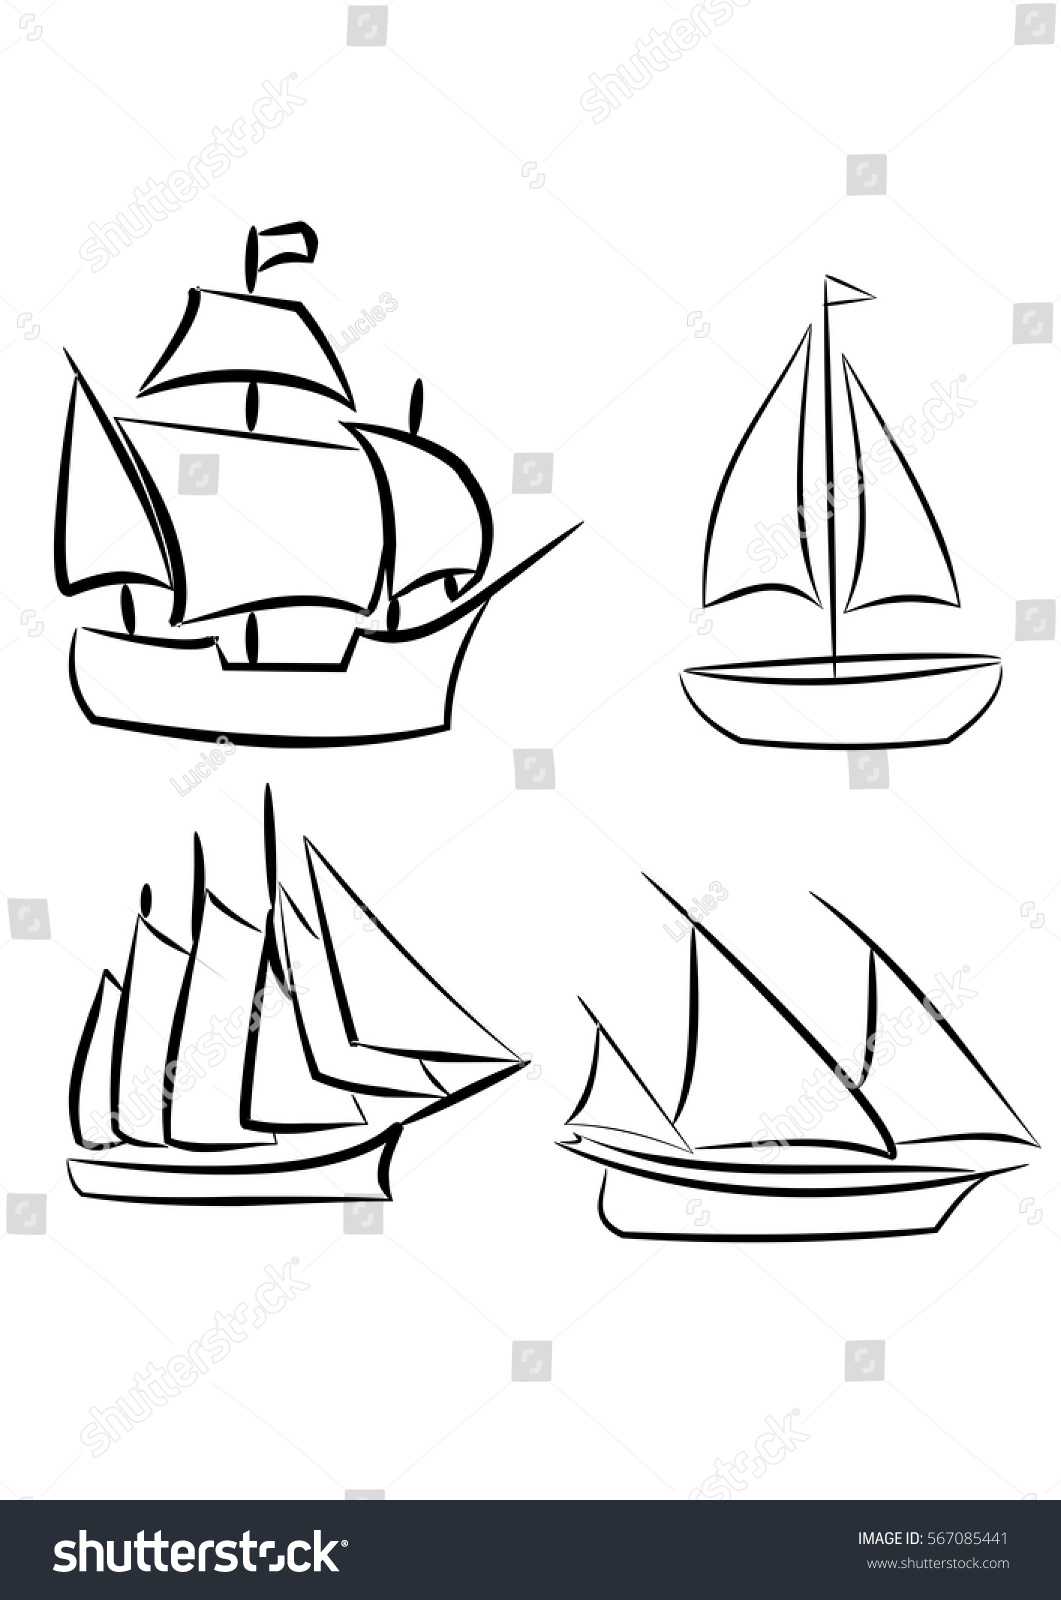 SVG of 4 sailboat svg